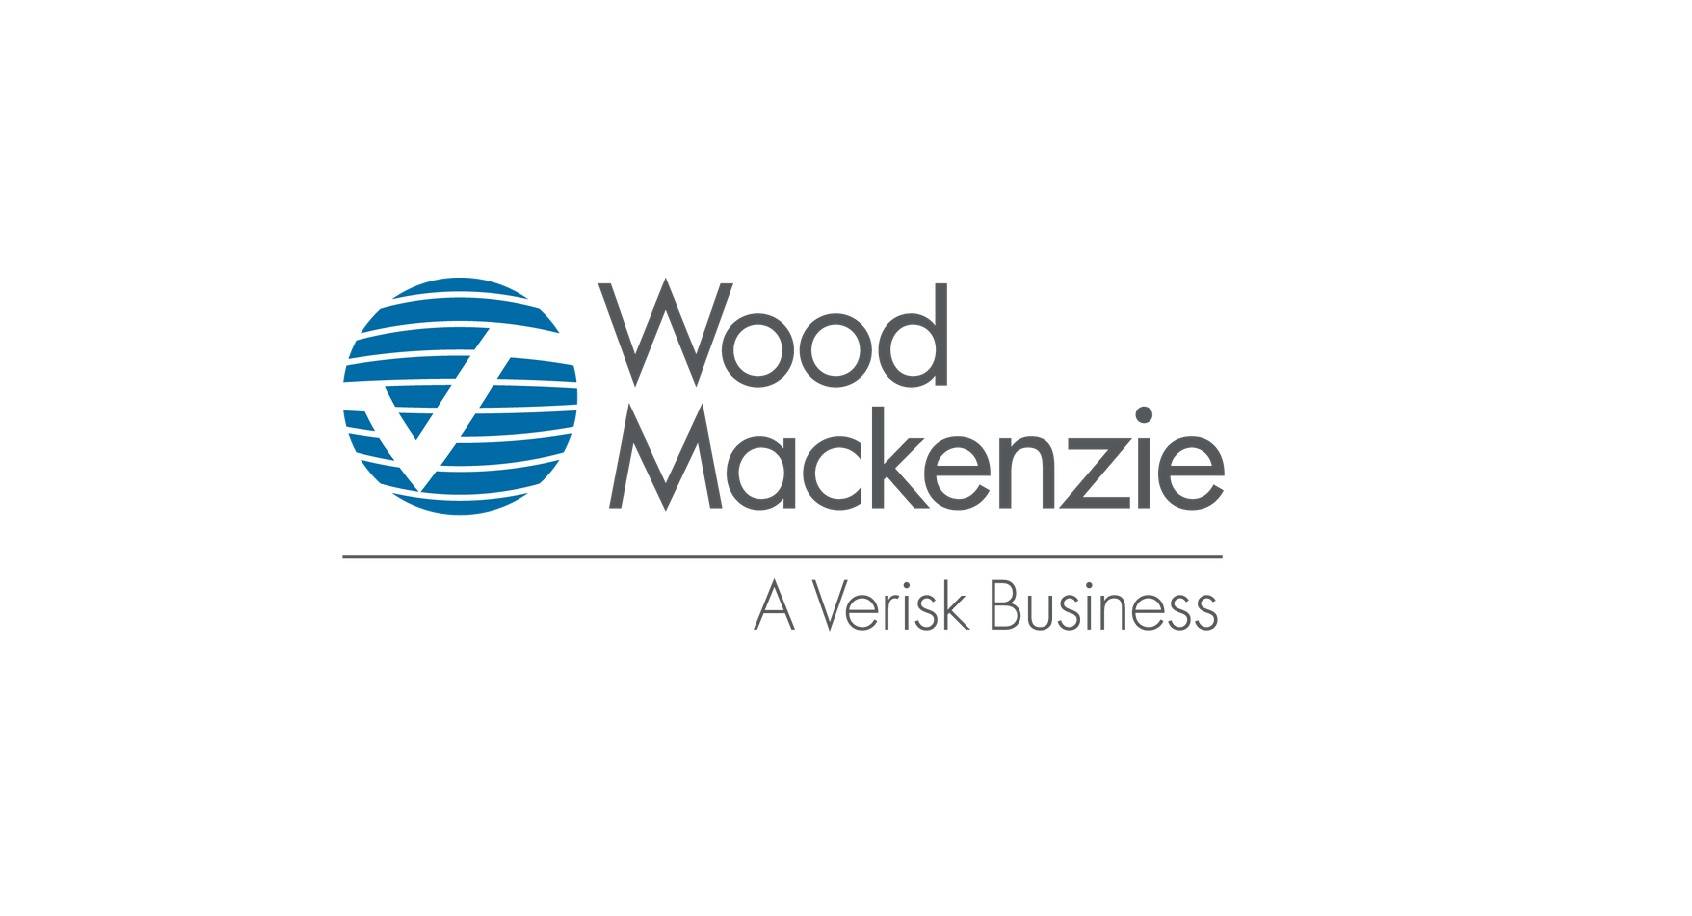 Woodmac Group, Woodmac Industries